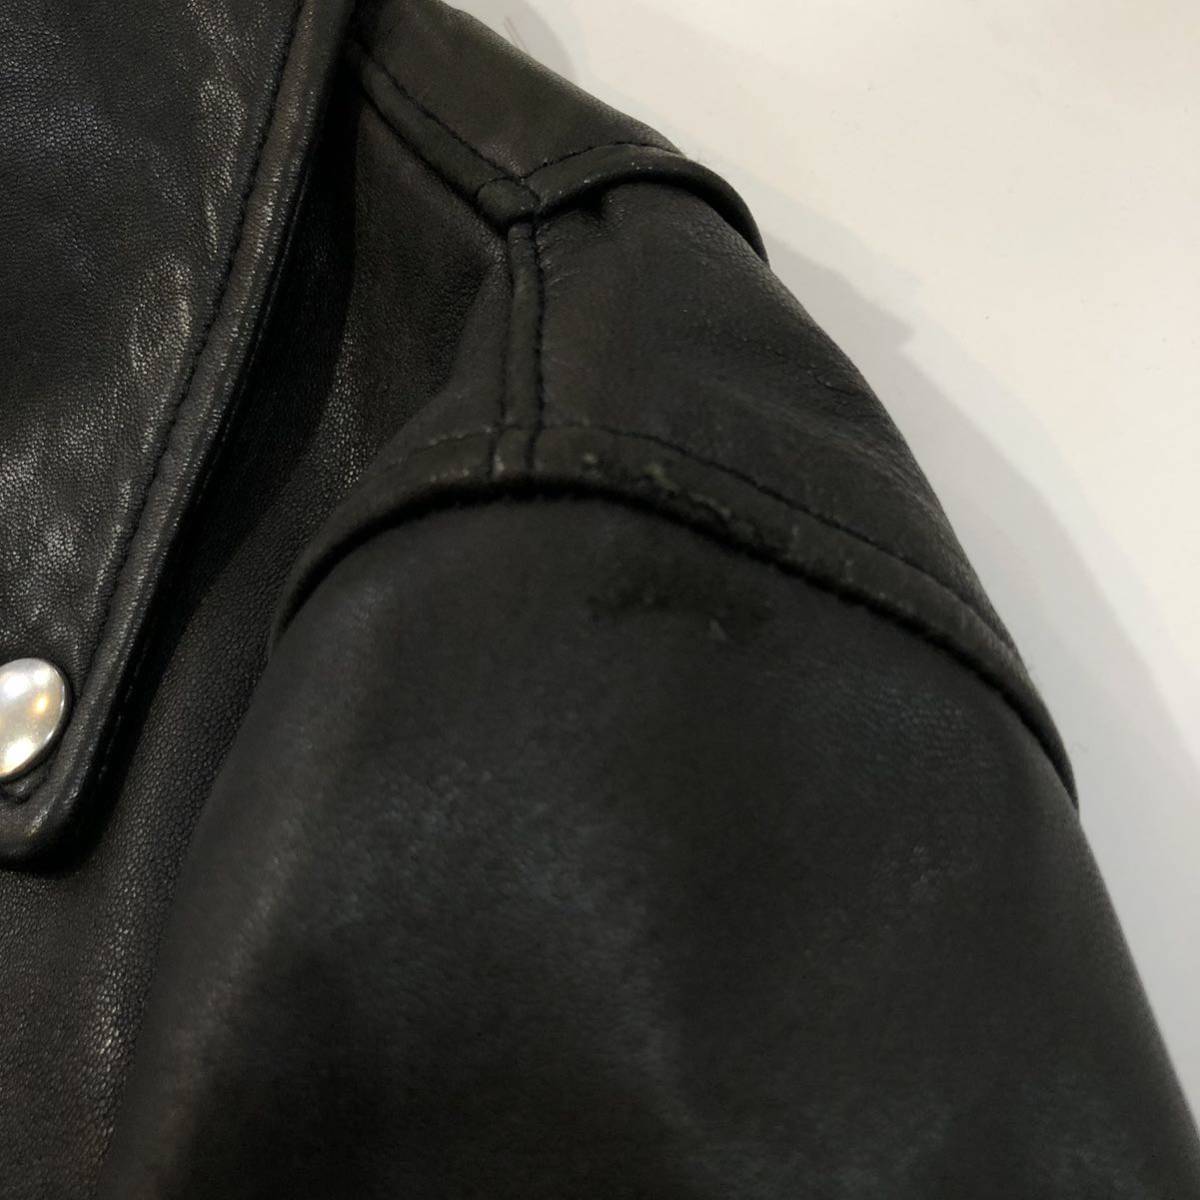 B360 Andemiu アンデミュウ ライダースジャケット レザージャケット 本革 レザー 皮革 羊革 アウター 上着 羽織り ブラック レディース Mの画像10